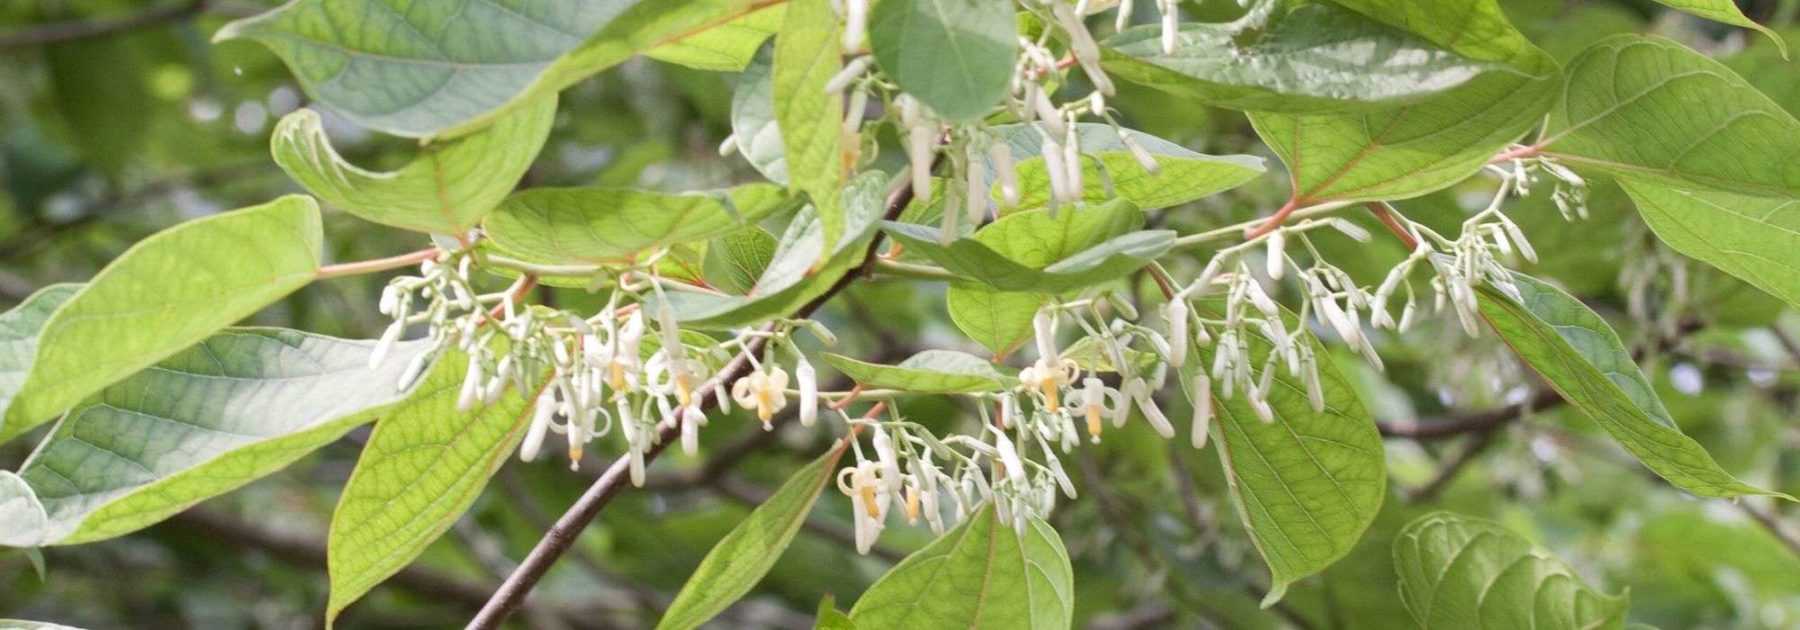 Alangium platanifolium, chinense : plantation, culture